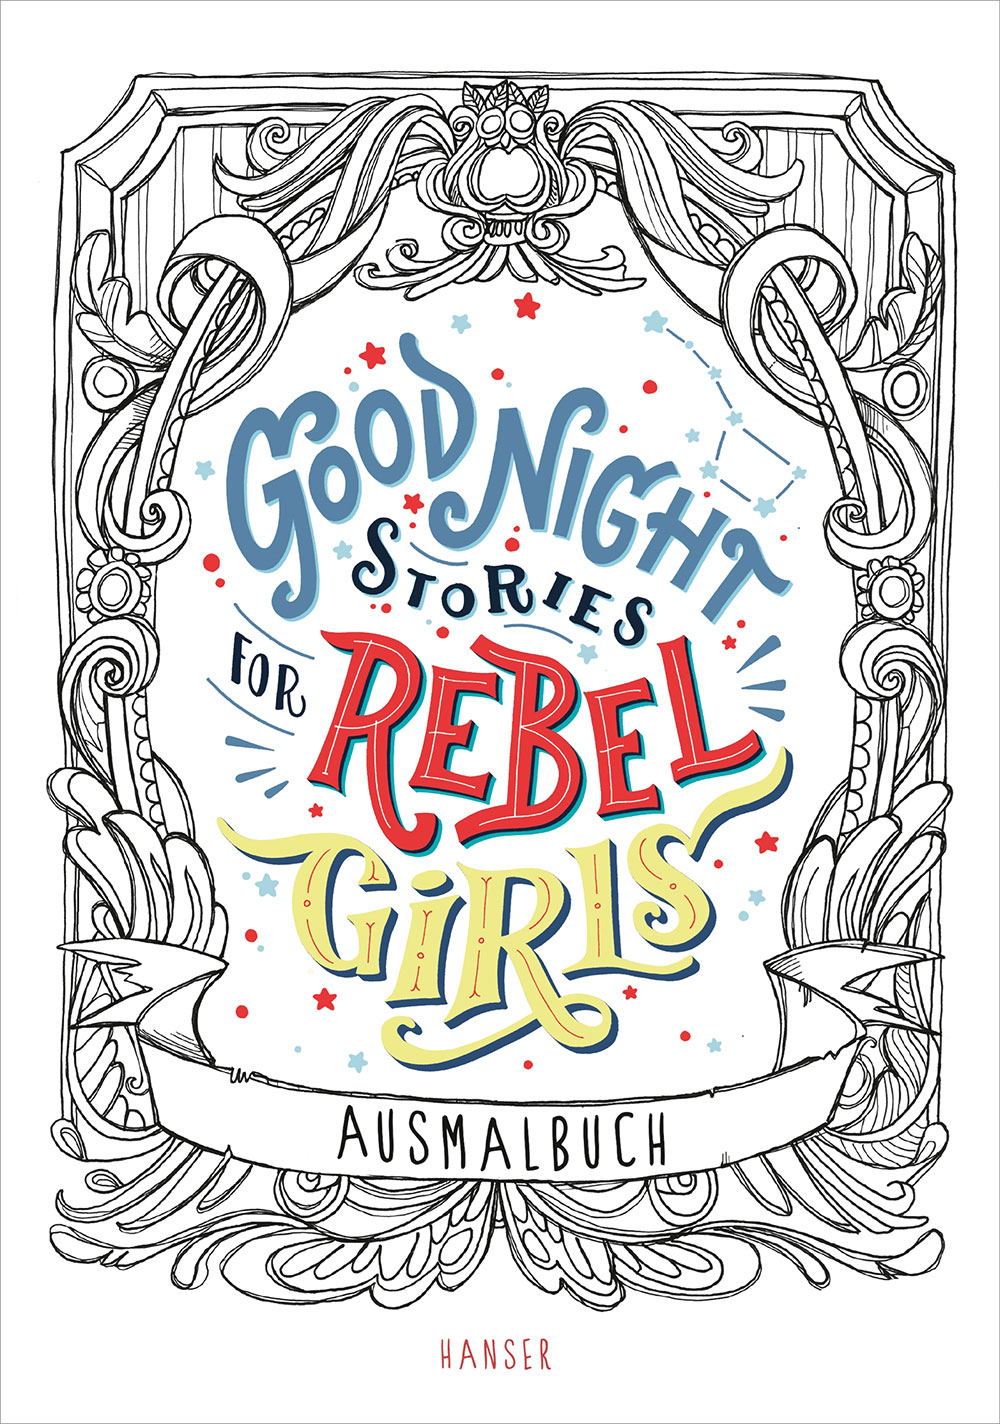 »Good Night Stories for Rebel Girls - Ausmalbuch« — Carl Hanser